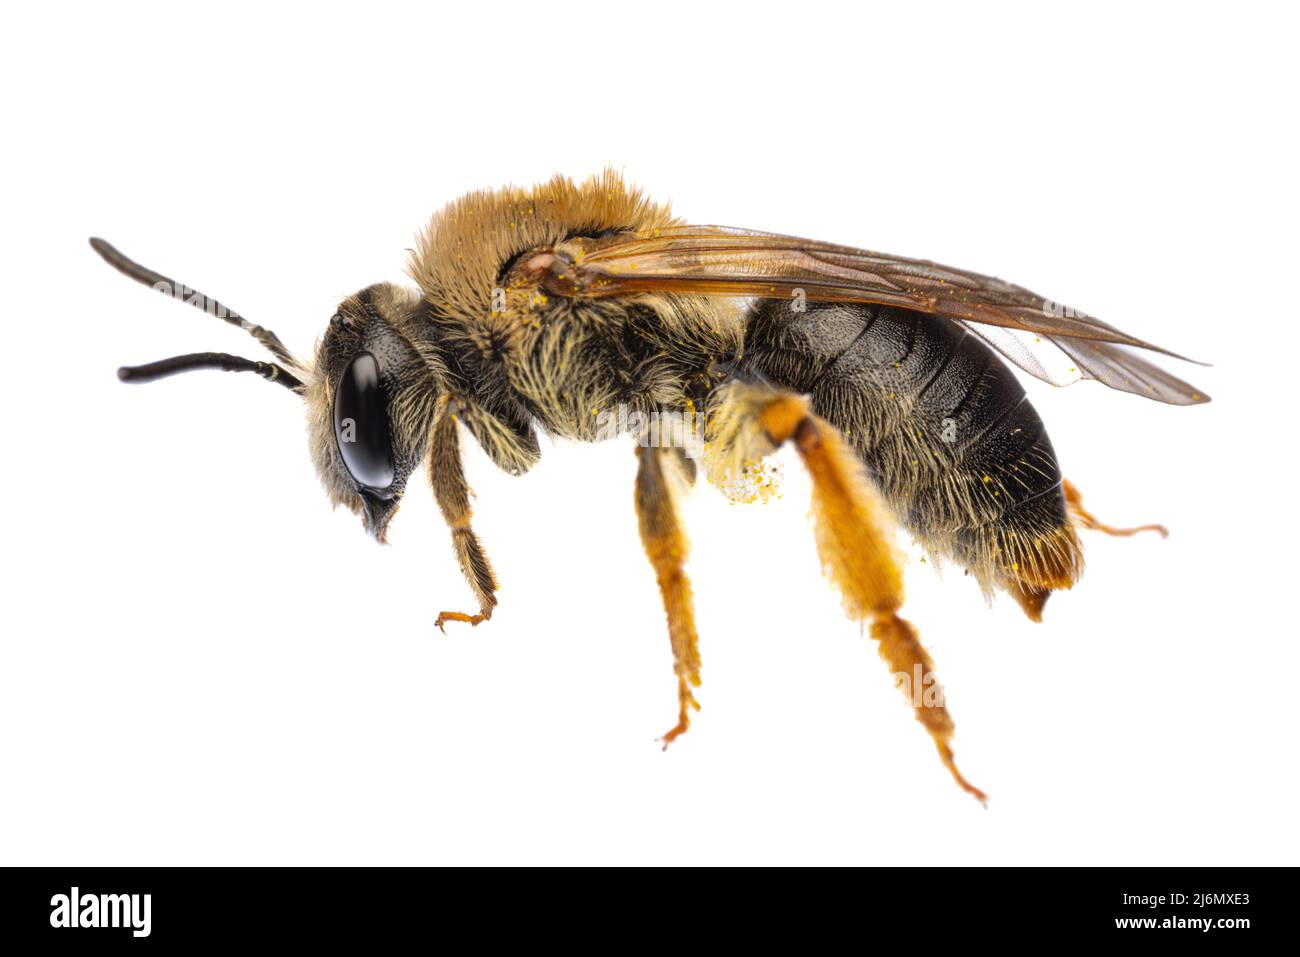 Insectes d'europe - abeilles: Vue latérale avec queue rouge de la femelle Andrena haemorrhoa (rotschopfige Sandbiene allemand) isolée sur fond blanc Banque D'Images